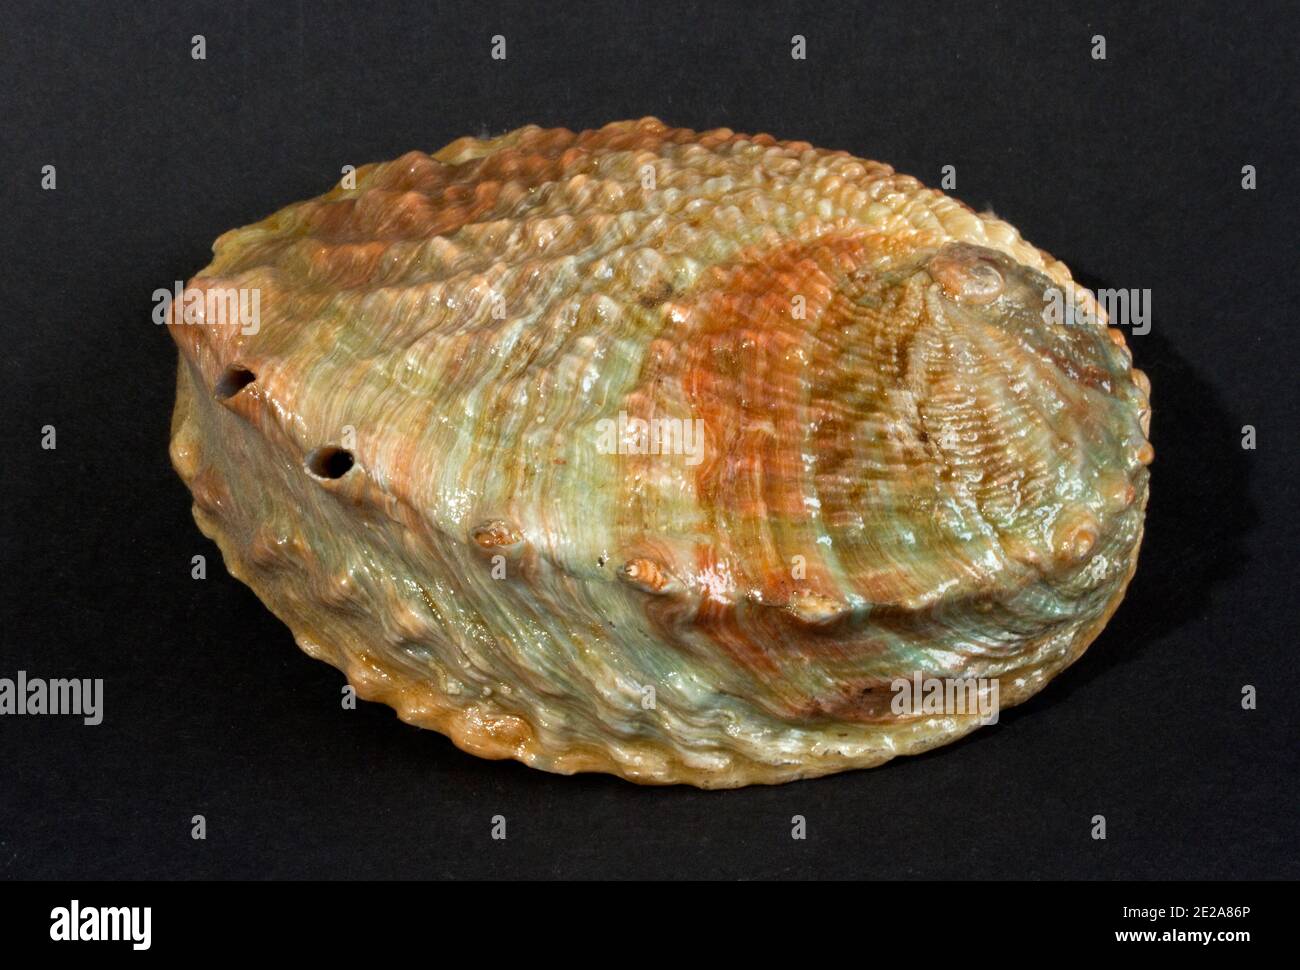 La forme distinctive de la coque prisée d'un Abalone. Ces mollusques gastéropodes vivent sous des roches et des coraux morts préférant des conditions plus froides Banque D'Images